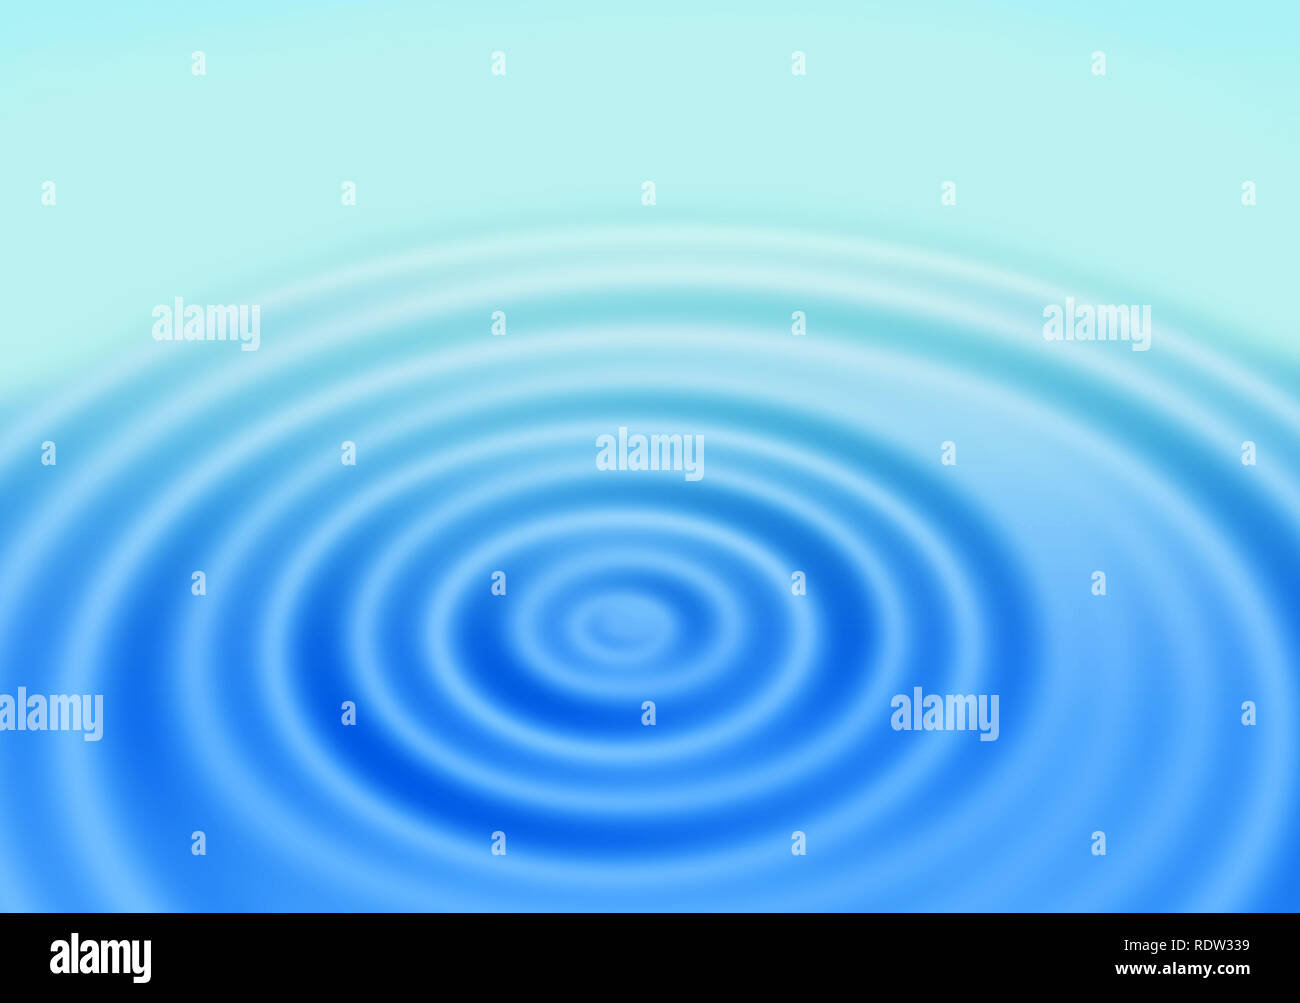 Blauen Gradienten abstrakt Hintergrund mit Ringen auf einer Wasseroberfläche Stockfoto